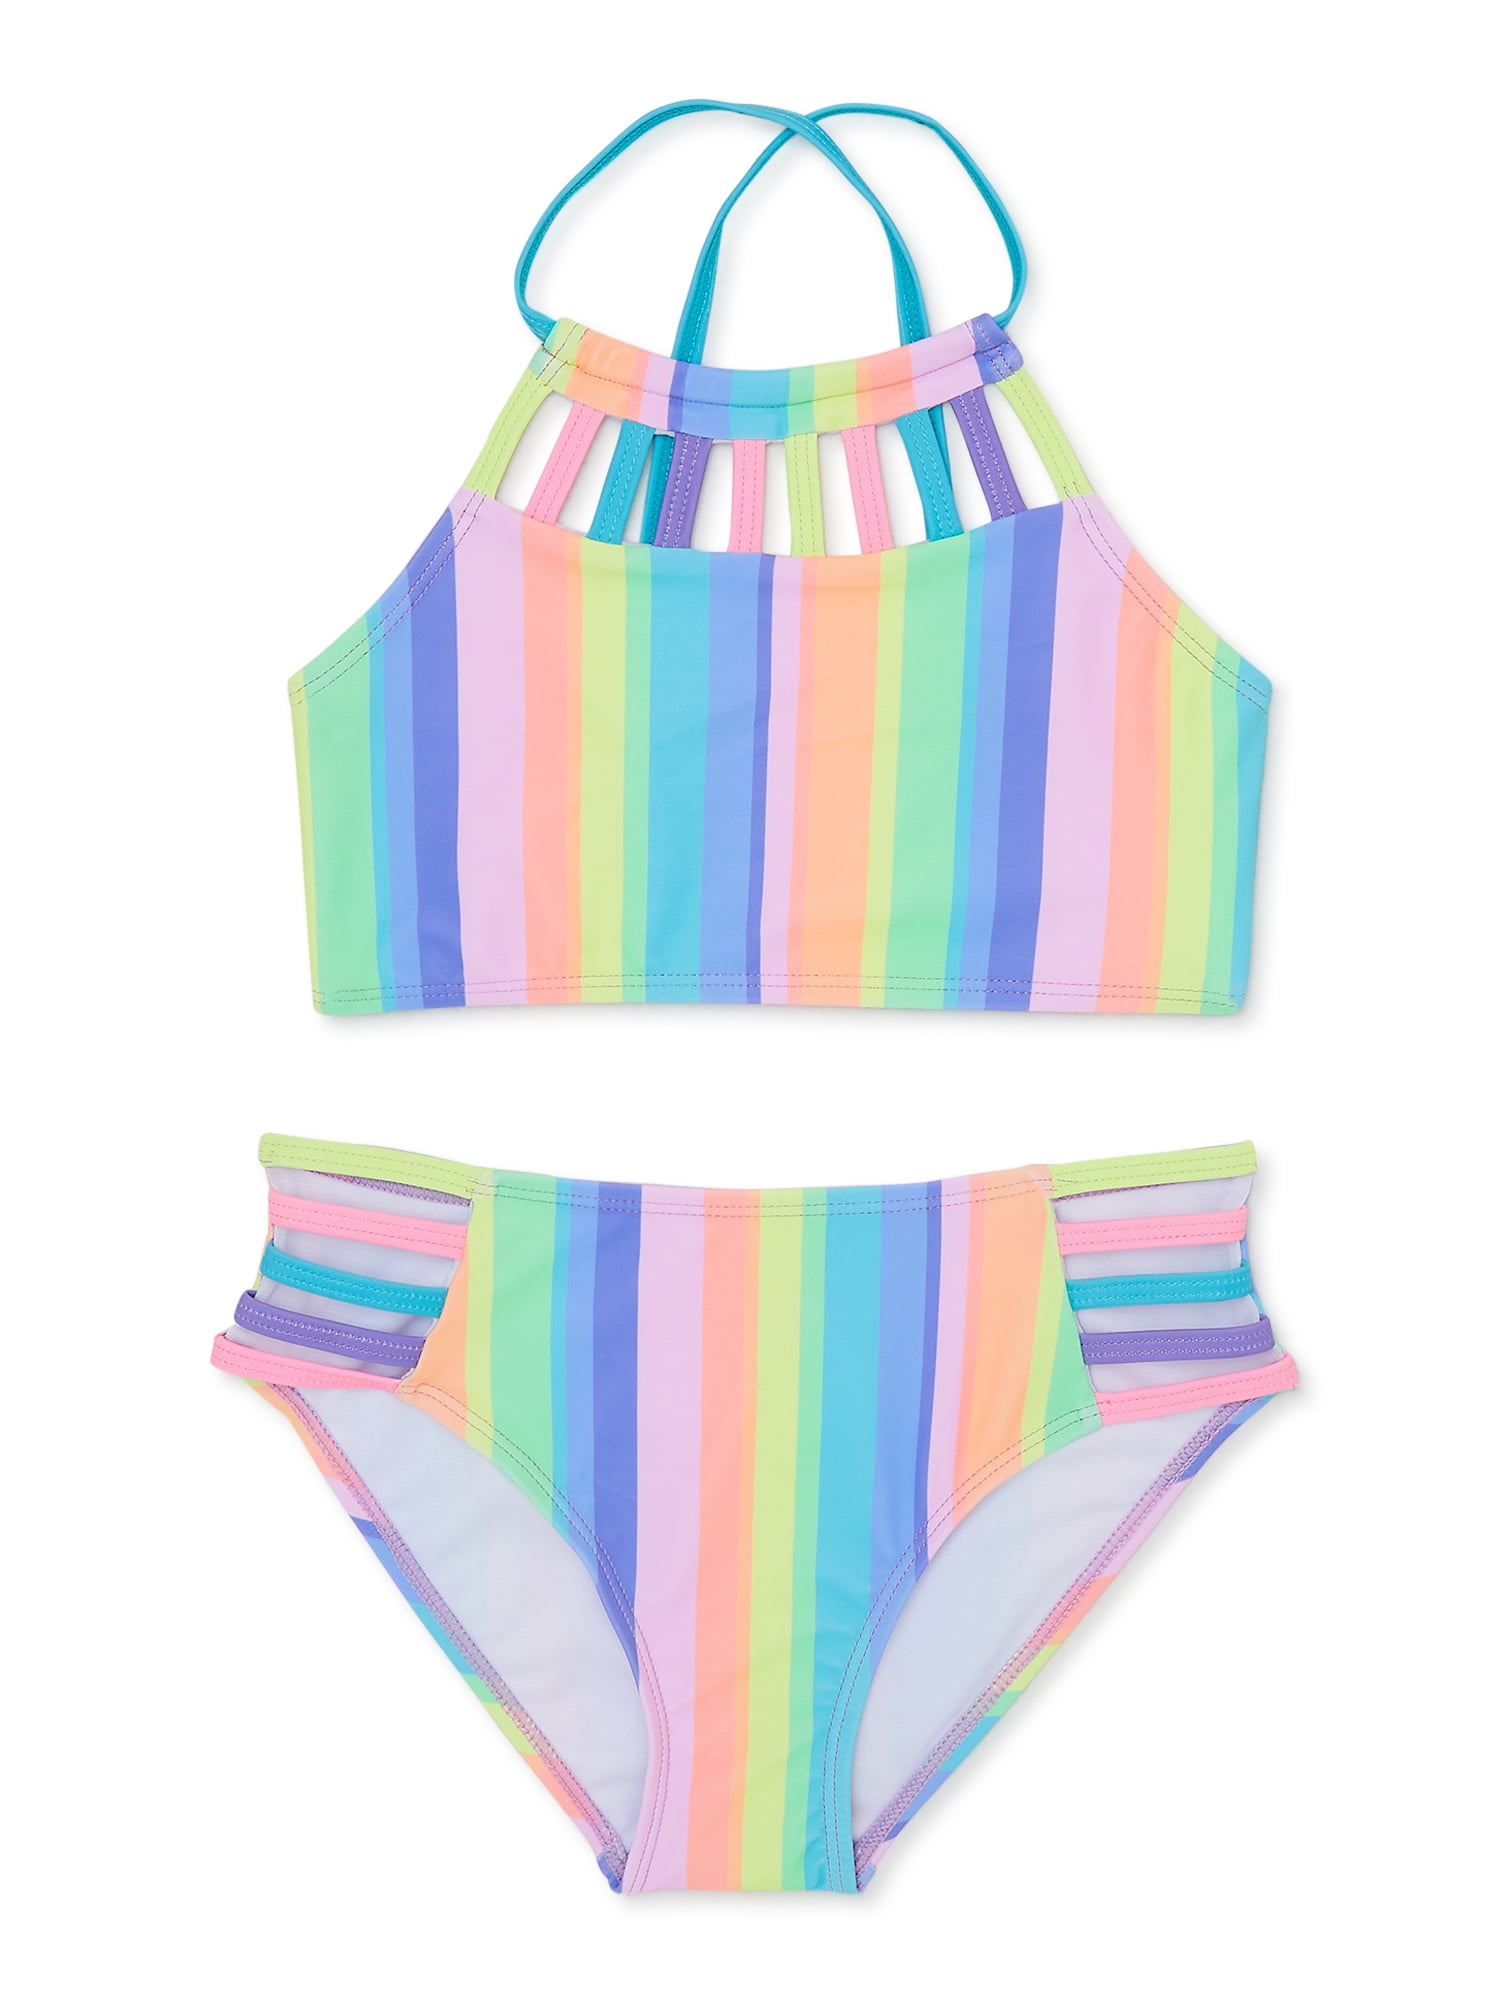 GO COCO Girls Striped Halter Bikini Swimsuit, 2-Piece, Sizes 4-16 ...